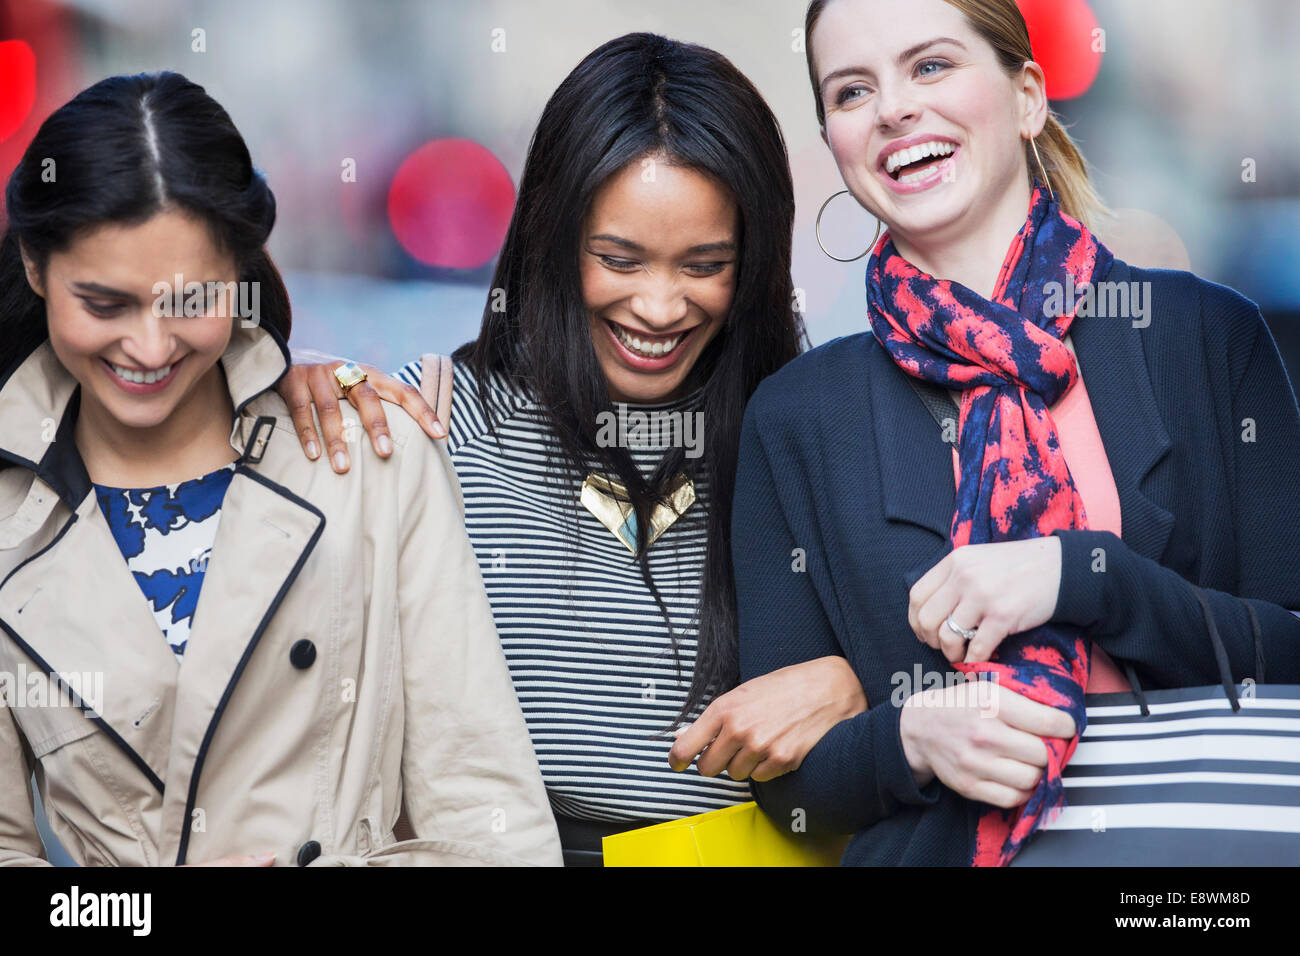 Les femmes rire ensemble on city street Banque D'Images